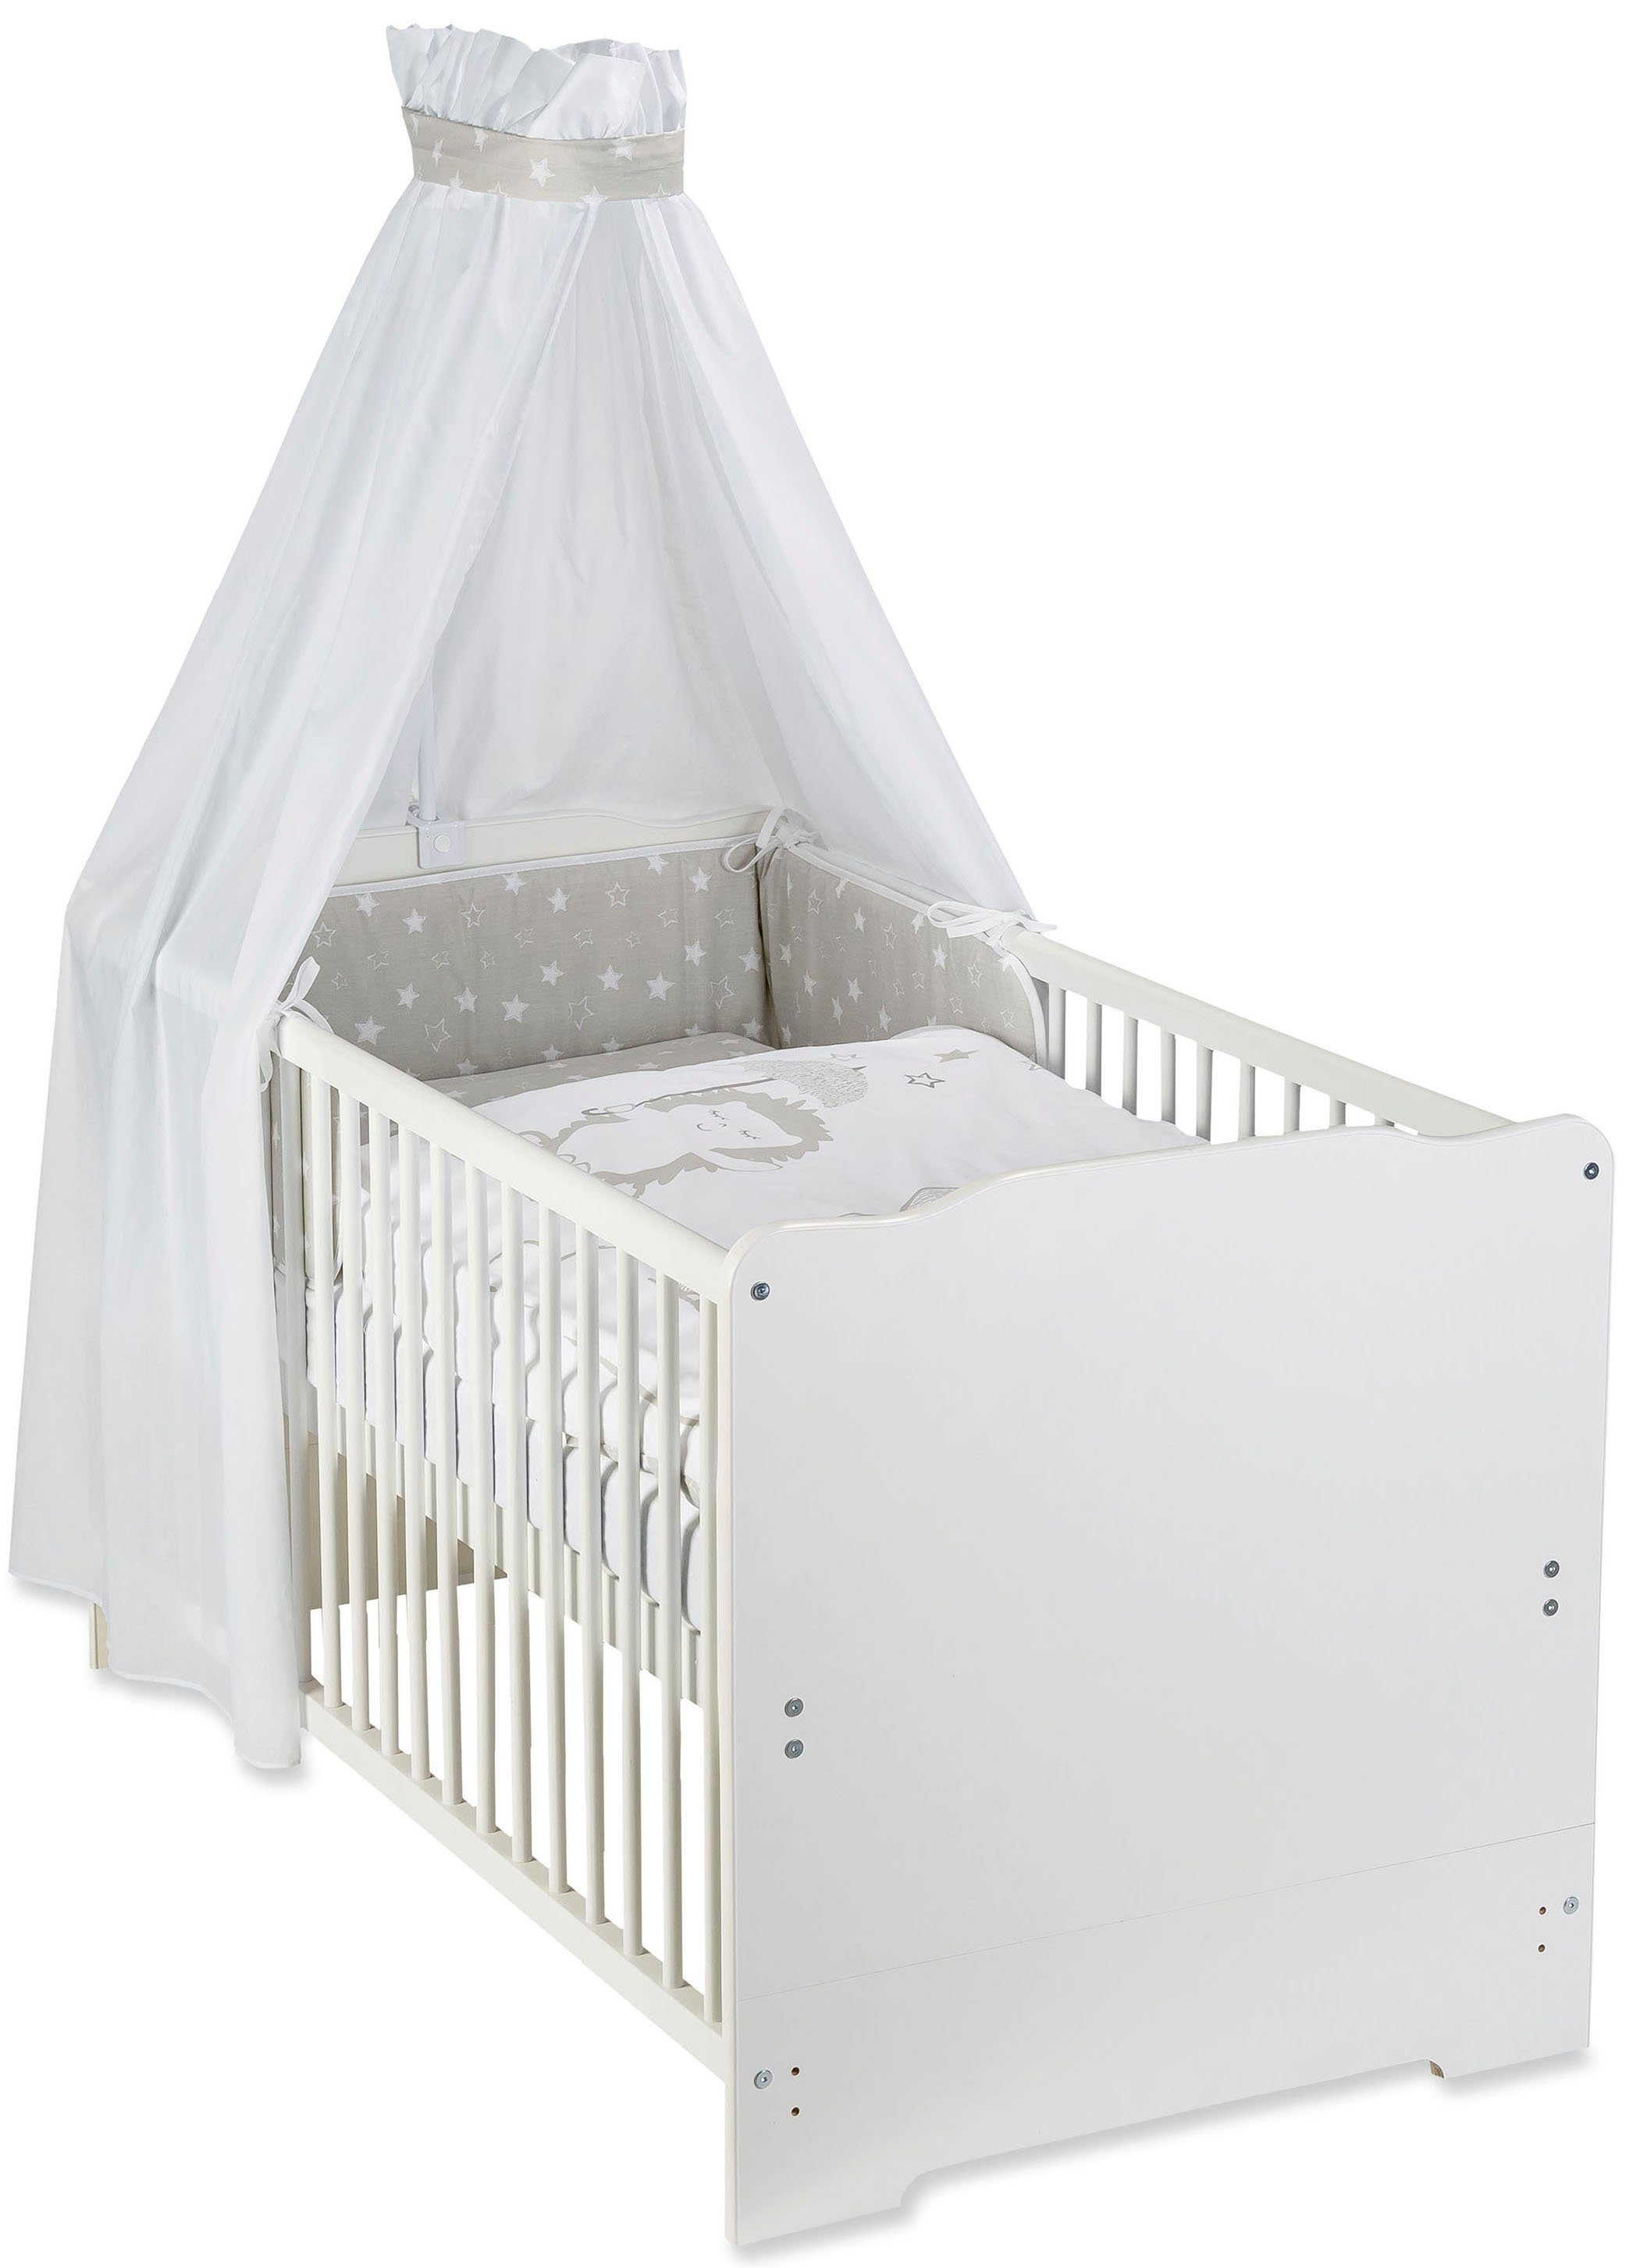 Baby Bettset Bett Haus Deko 120x60 Bettwäsche Nestchen Kissen Bettdecke WEIß LUX 